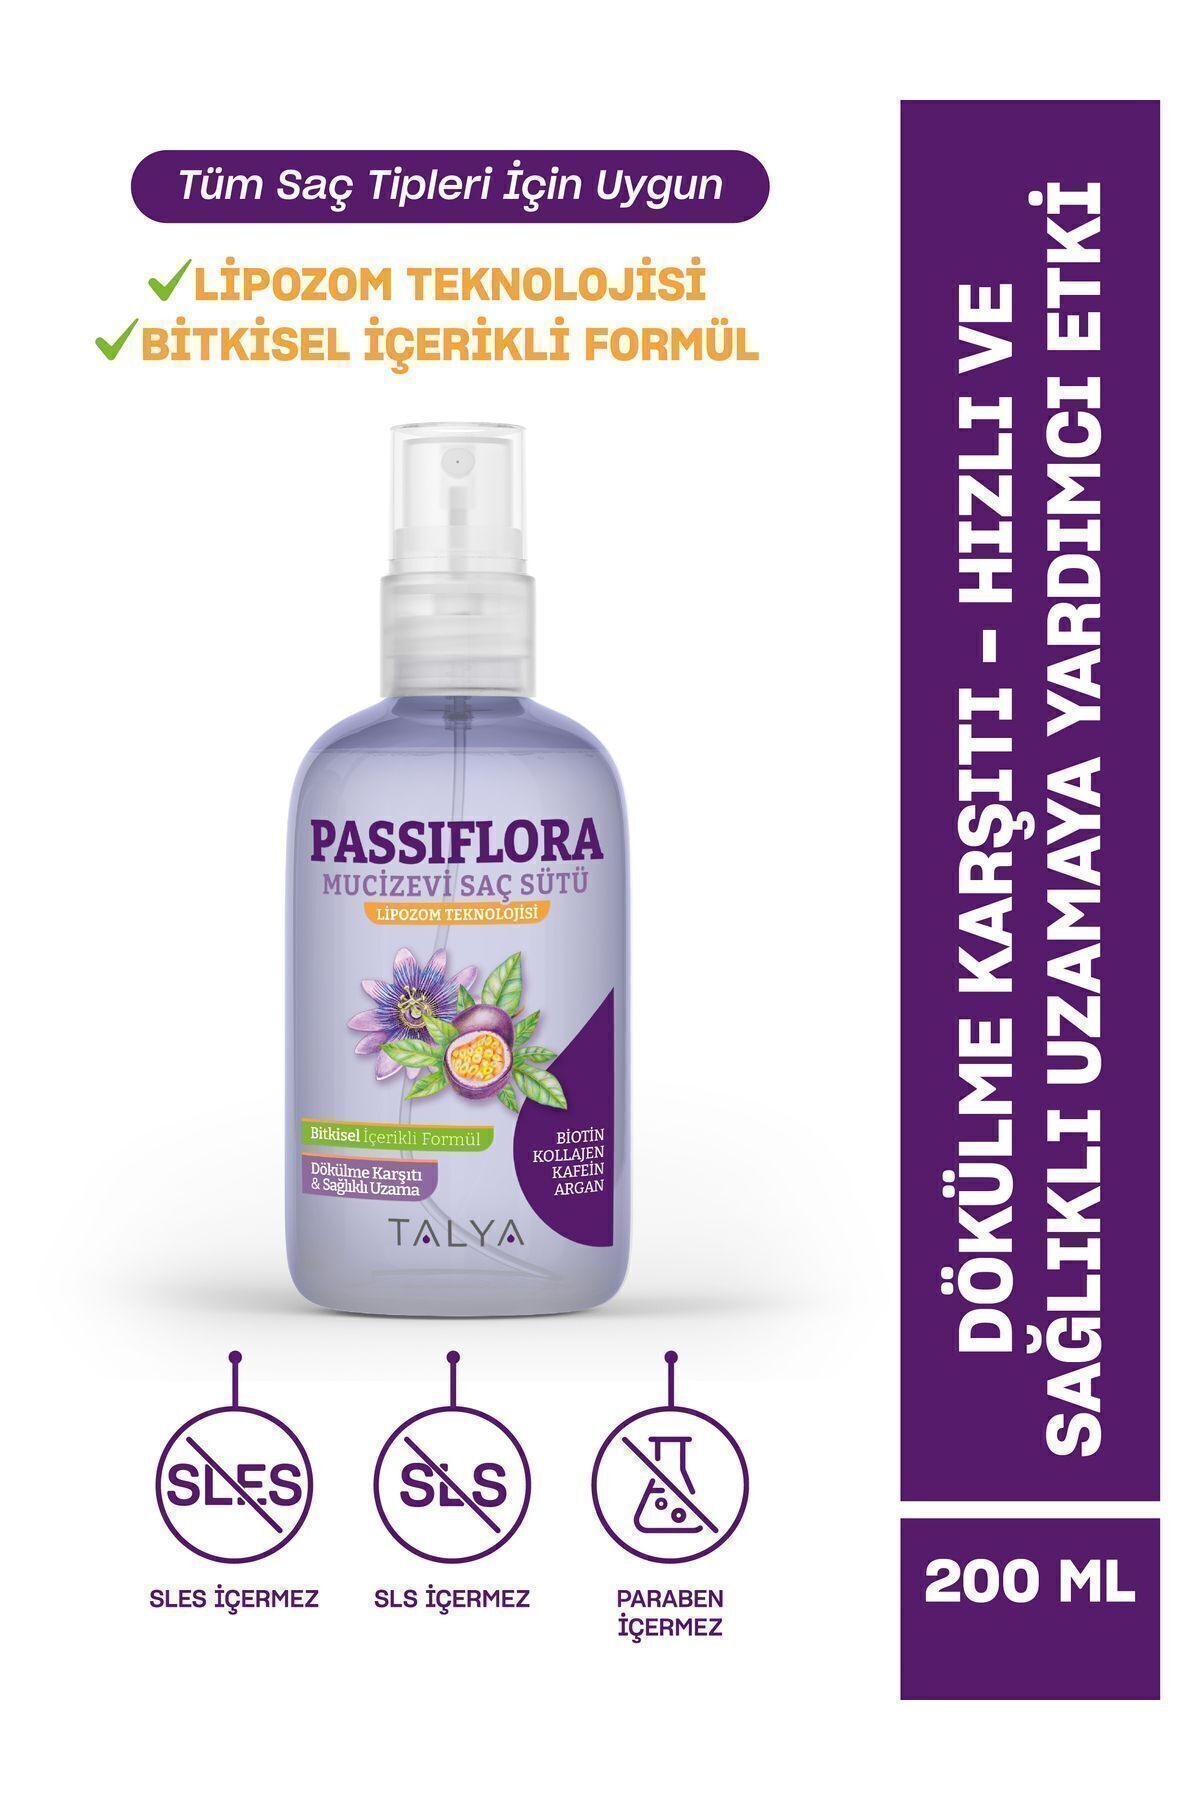 Talya Passiflora Mucizevi Saç Sütü - Dökülme Karşıtı Ve Hızlı Saç Uzatma Etkili 200 Ml